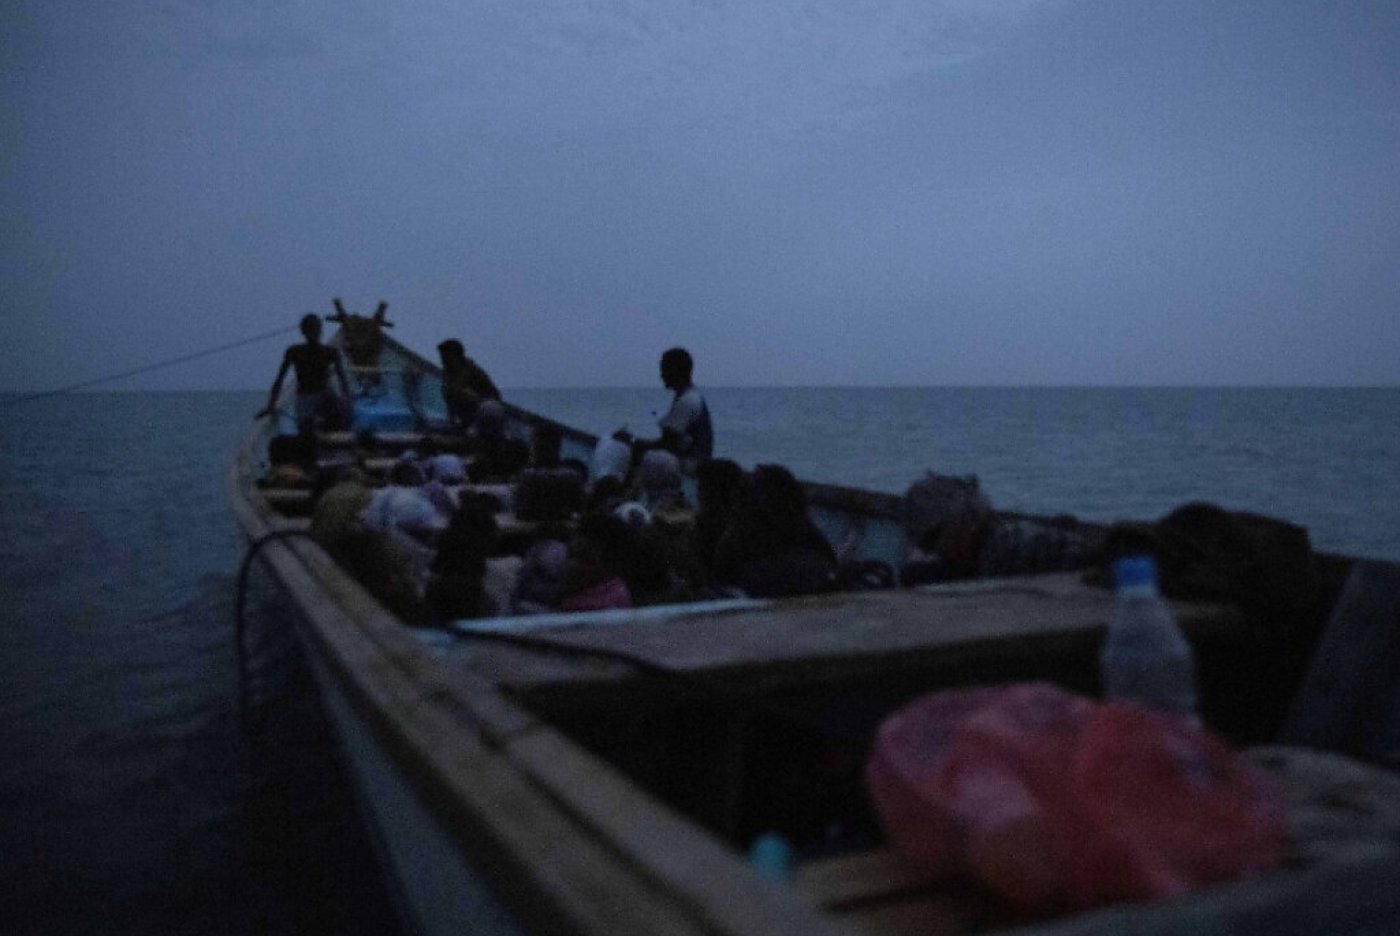 Selon l'OIM, 77 migrants se trouvaient à bord du bateau qui a fait naufrage (image d'illustration). KEYSTONE